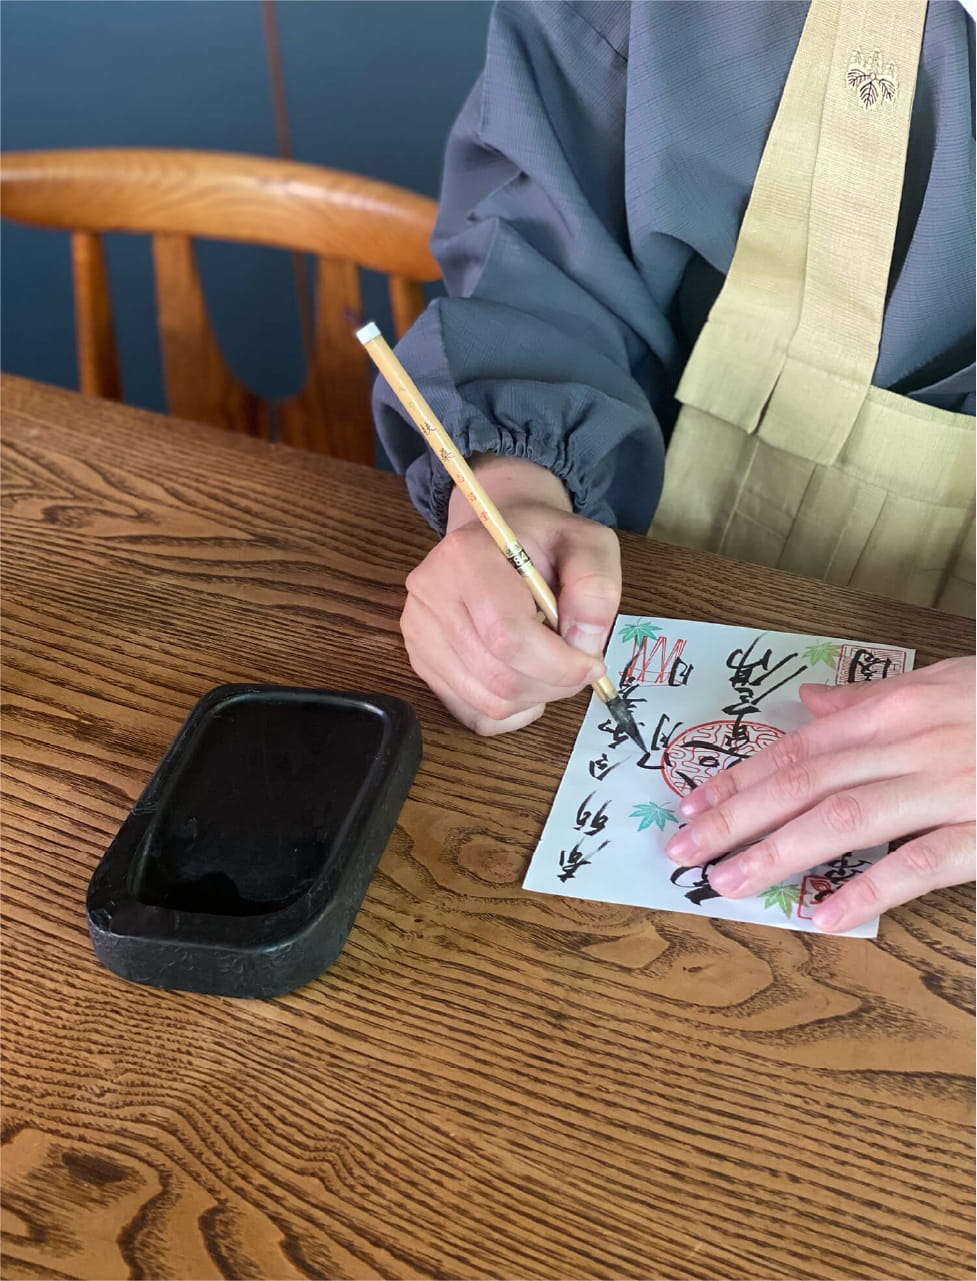 伝統的な衣服を着た人が木製の机で筆と墨を使って文字を書いている様子